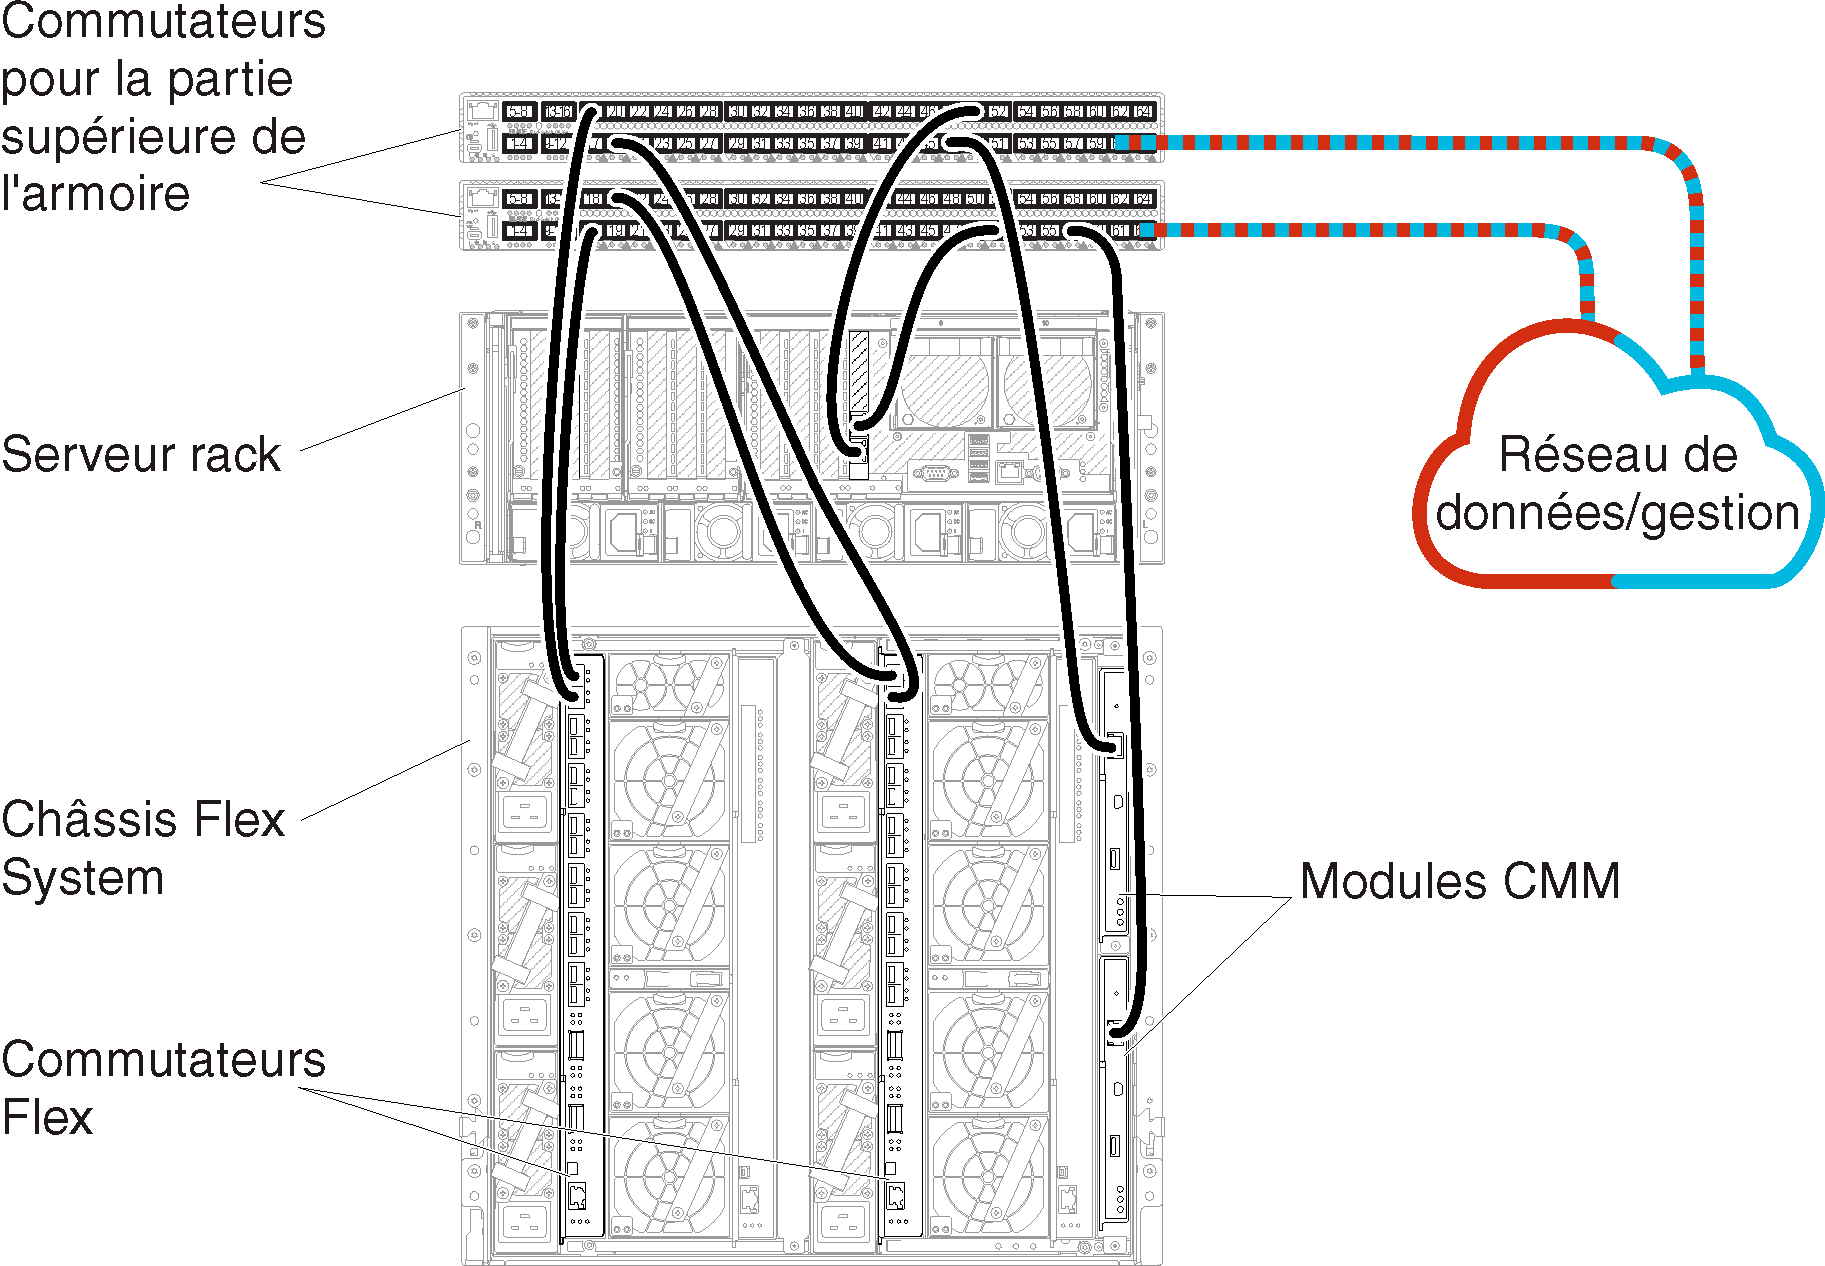 Illustre le câblage du châssis, du serveur rack et du réseau sur les commutateurs de la partie supérieure de l'armoire pour un réseau de donnée unique et de gestion